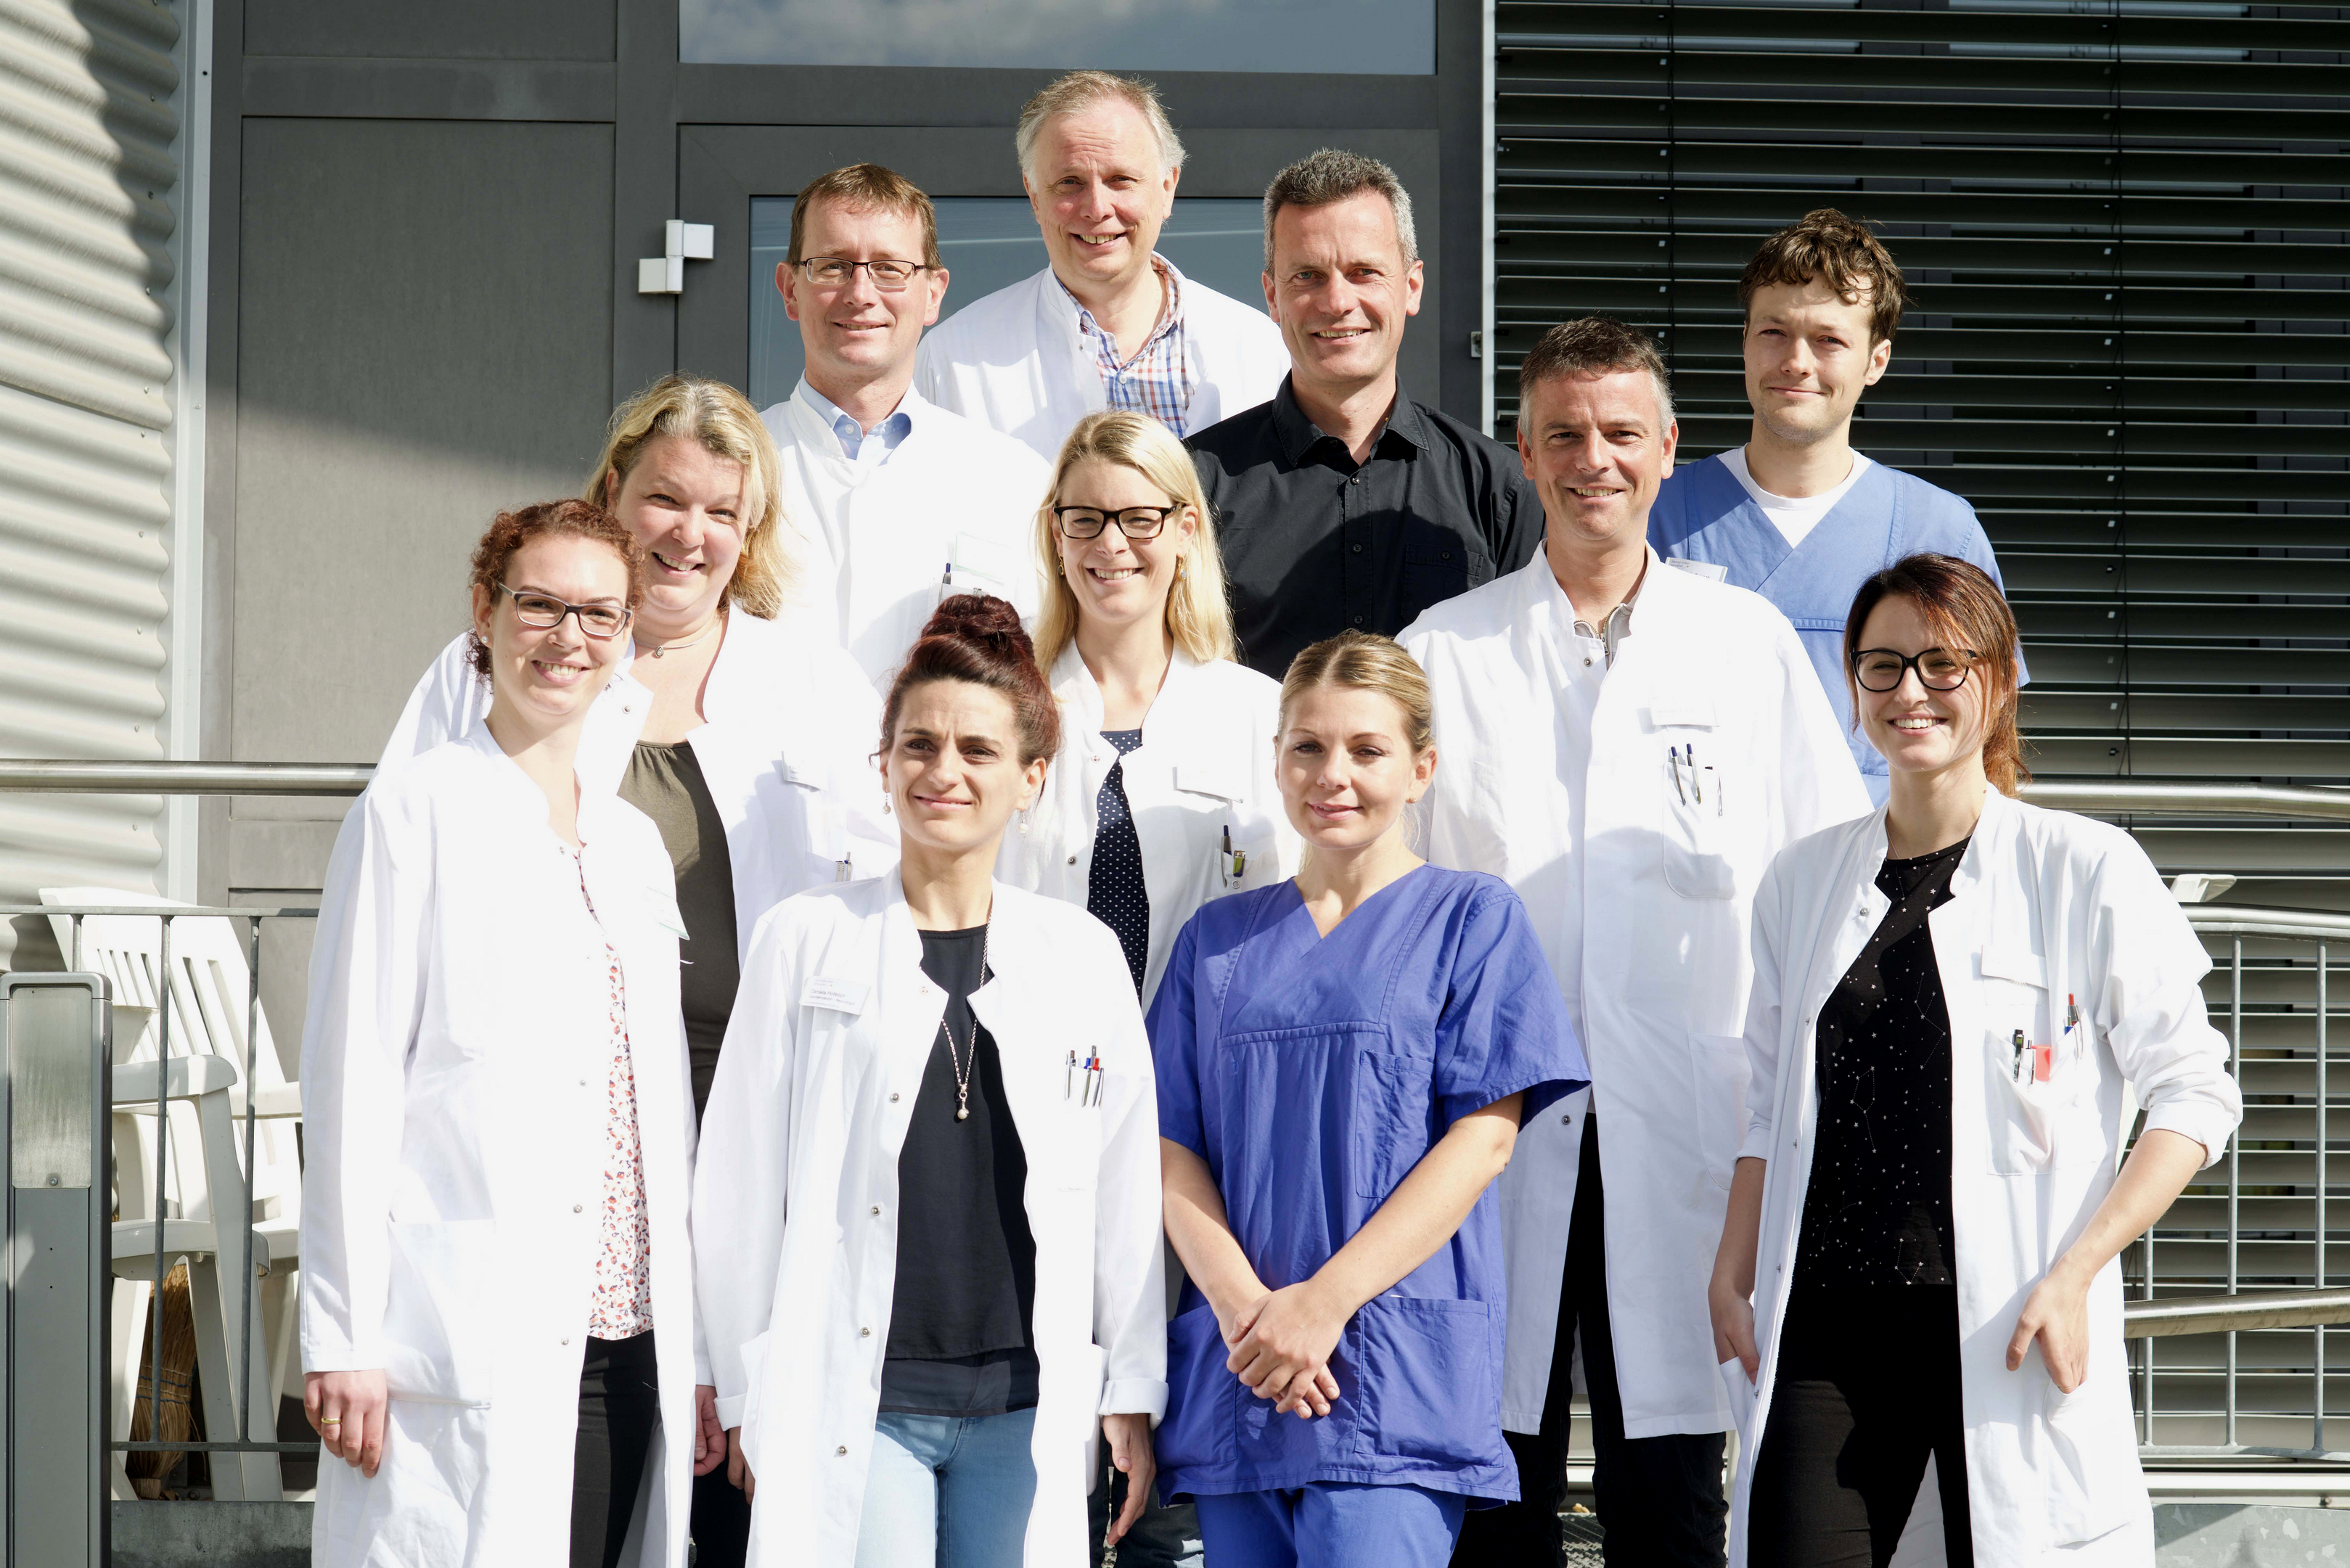 Unser Bild zeigt unter anderem den Ärztlichen Direktor der Klinik, Prof. Dr. Gerhard F. Hamann (hintere Reihe, Mitte) sowie Prof. Dr. Bernd Schmitz (Chefarzt Neuroradiologie; rechts neben ihm) und Leitender Oberarzt Dr. Burkhard Alber (links neben Hamann).